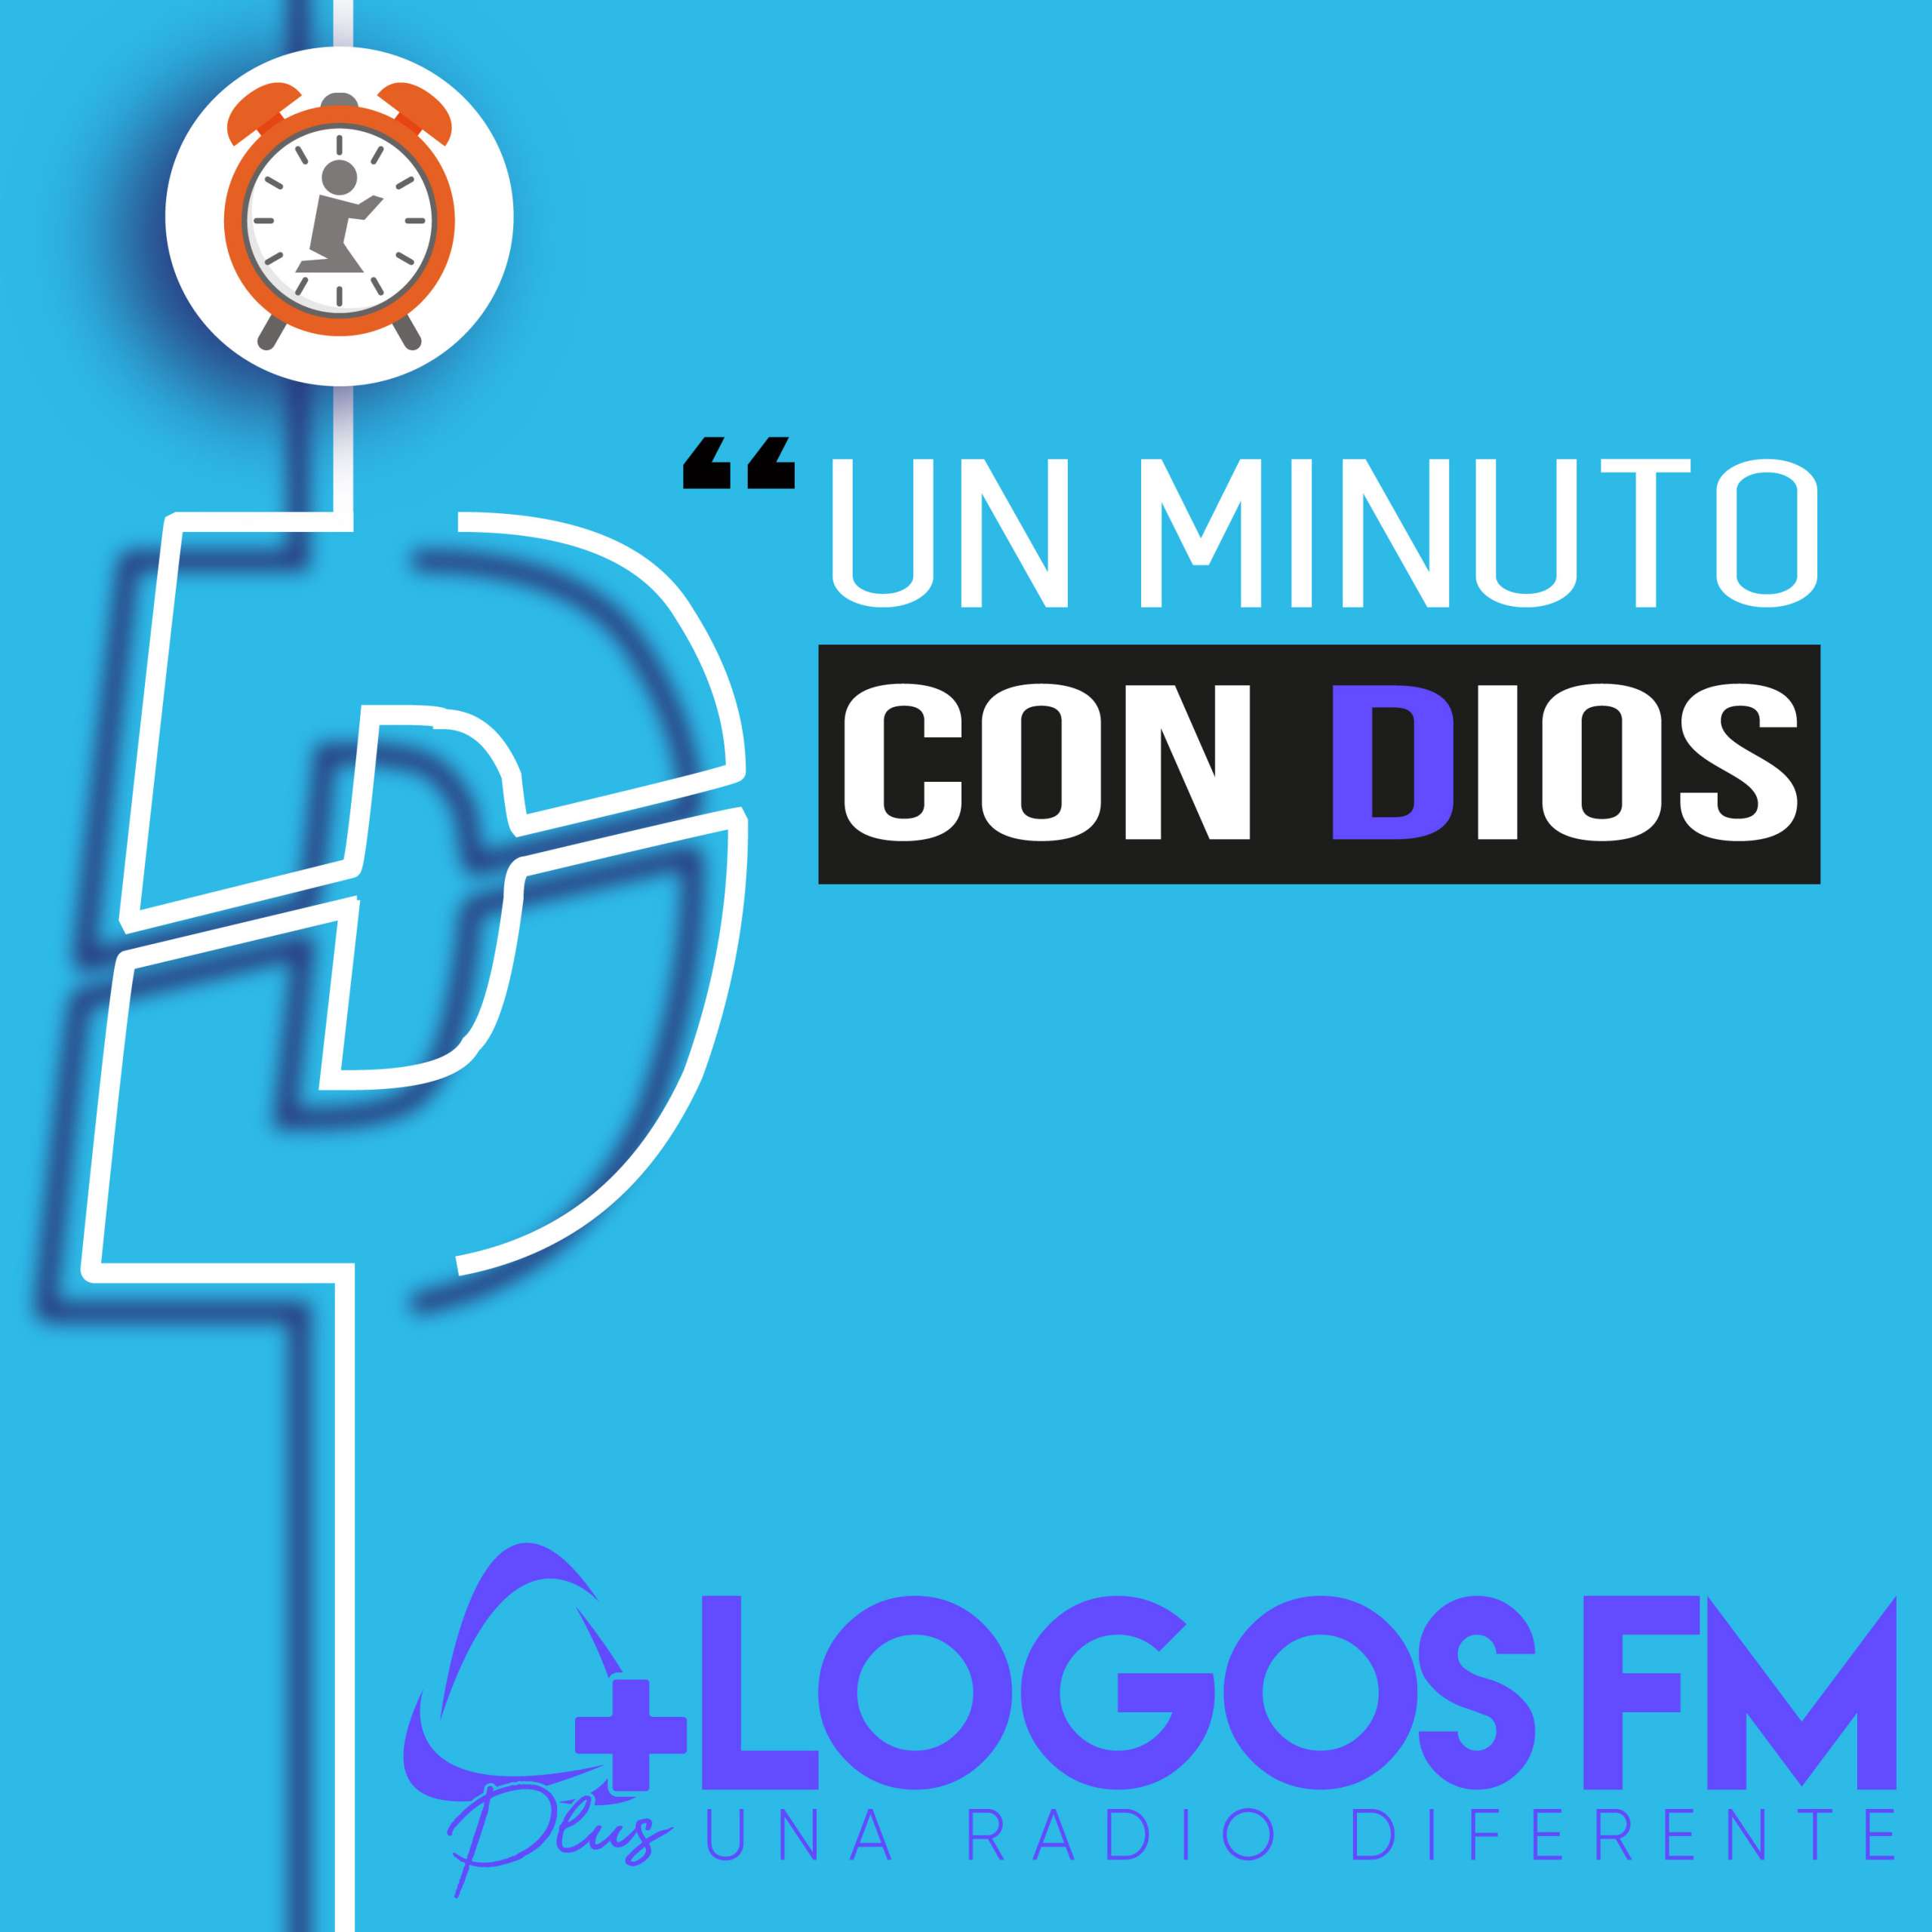 Un minuto con Dios - Episodio 455 - Oniss García